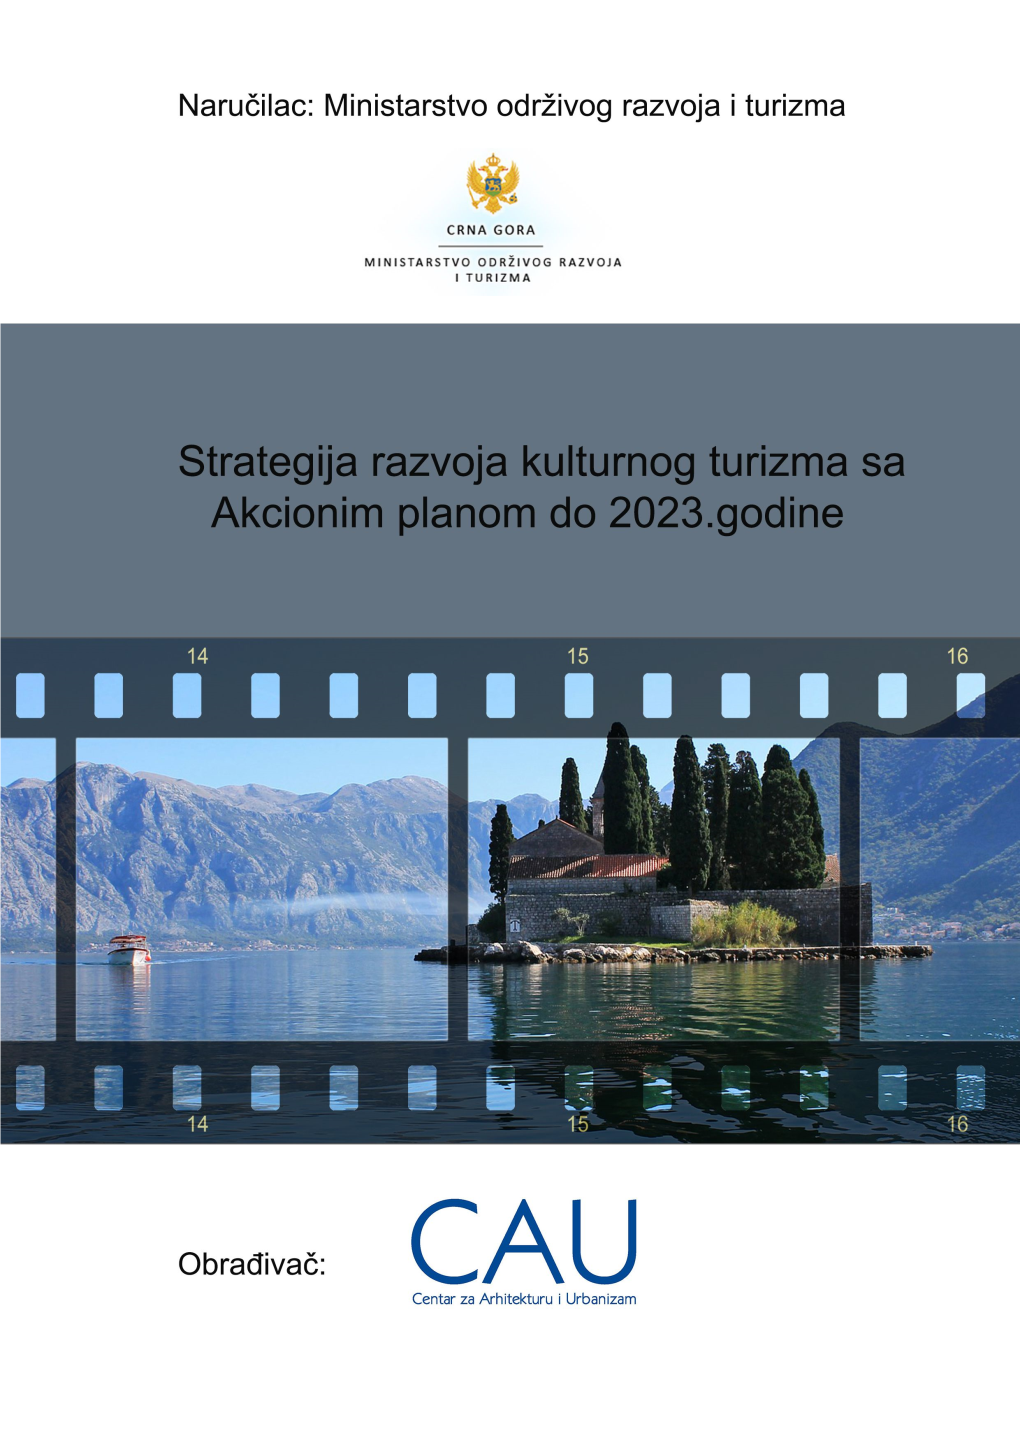 Strategija Razvoja Kulturnog Turizma Crne Gore Sa Akcionim Planom Do 2023. Godine